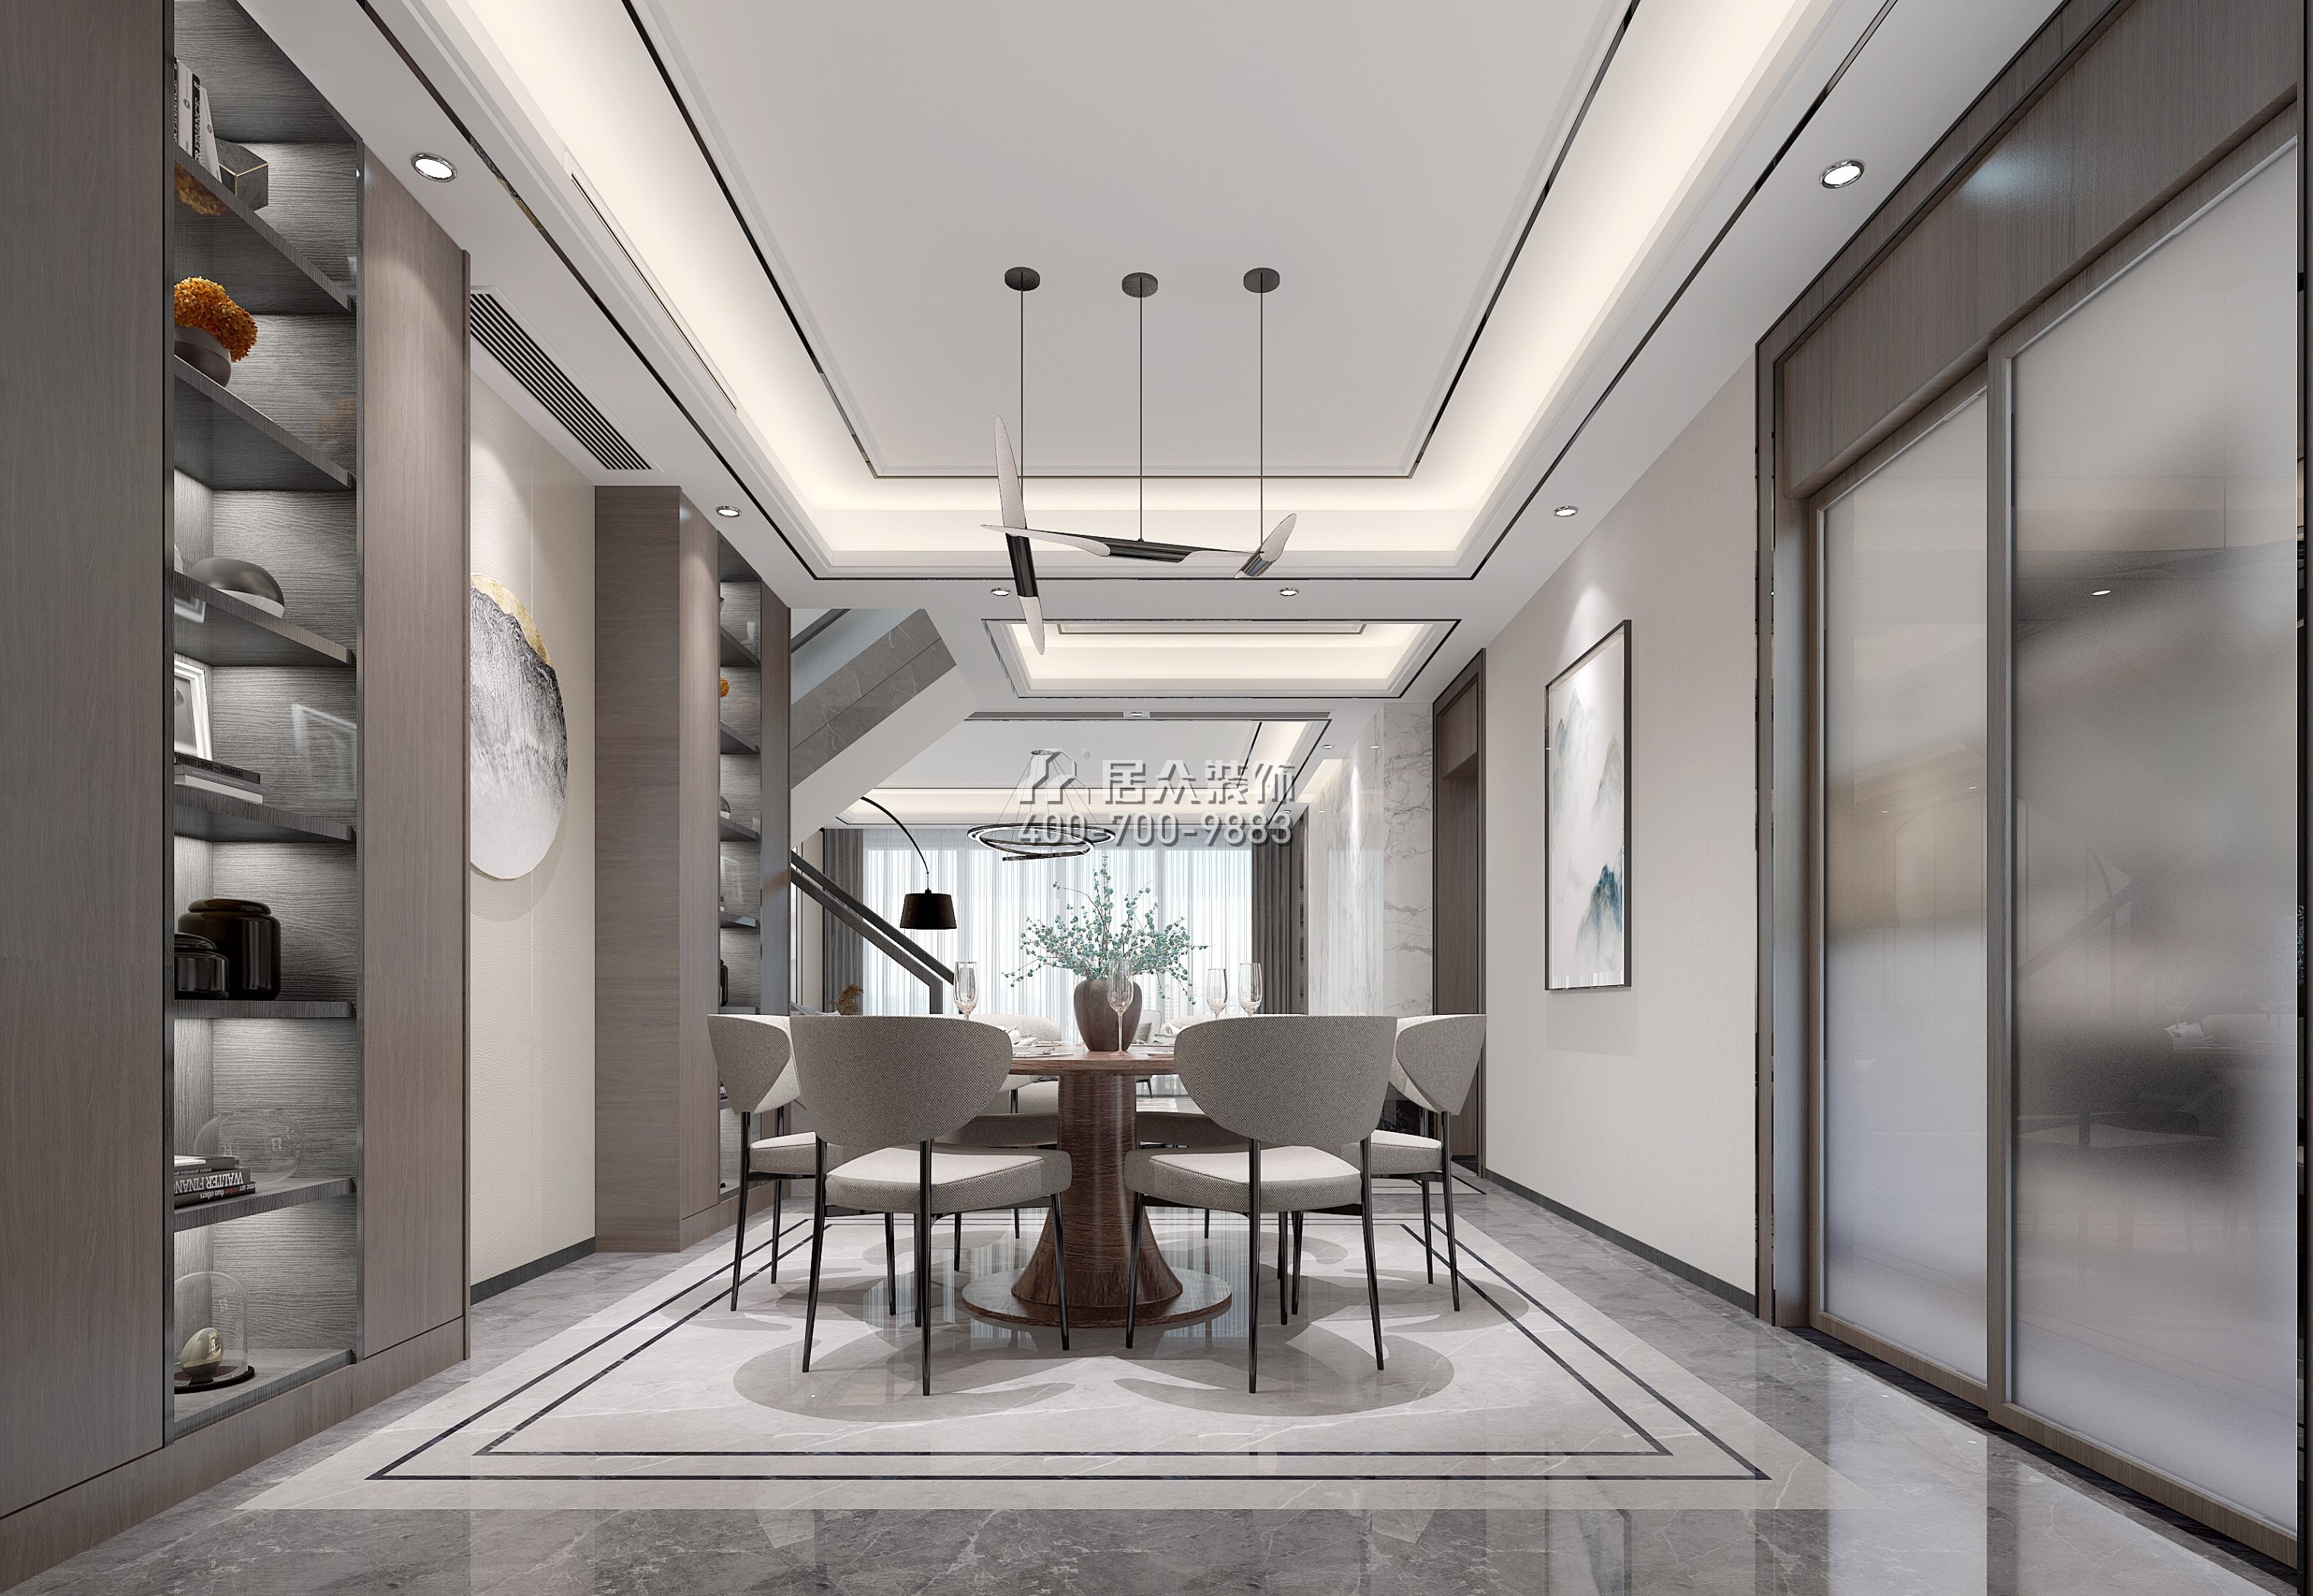 星河丹堤250平方米中式风格复式户型餐厅kok电竞平台效果图